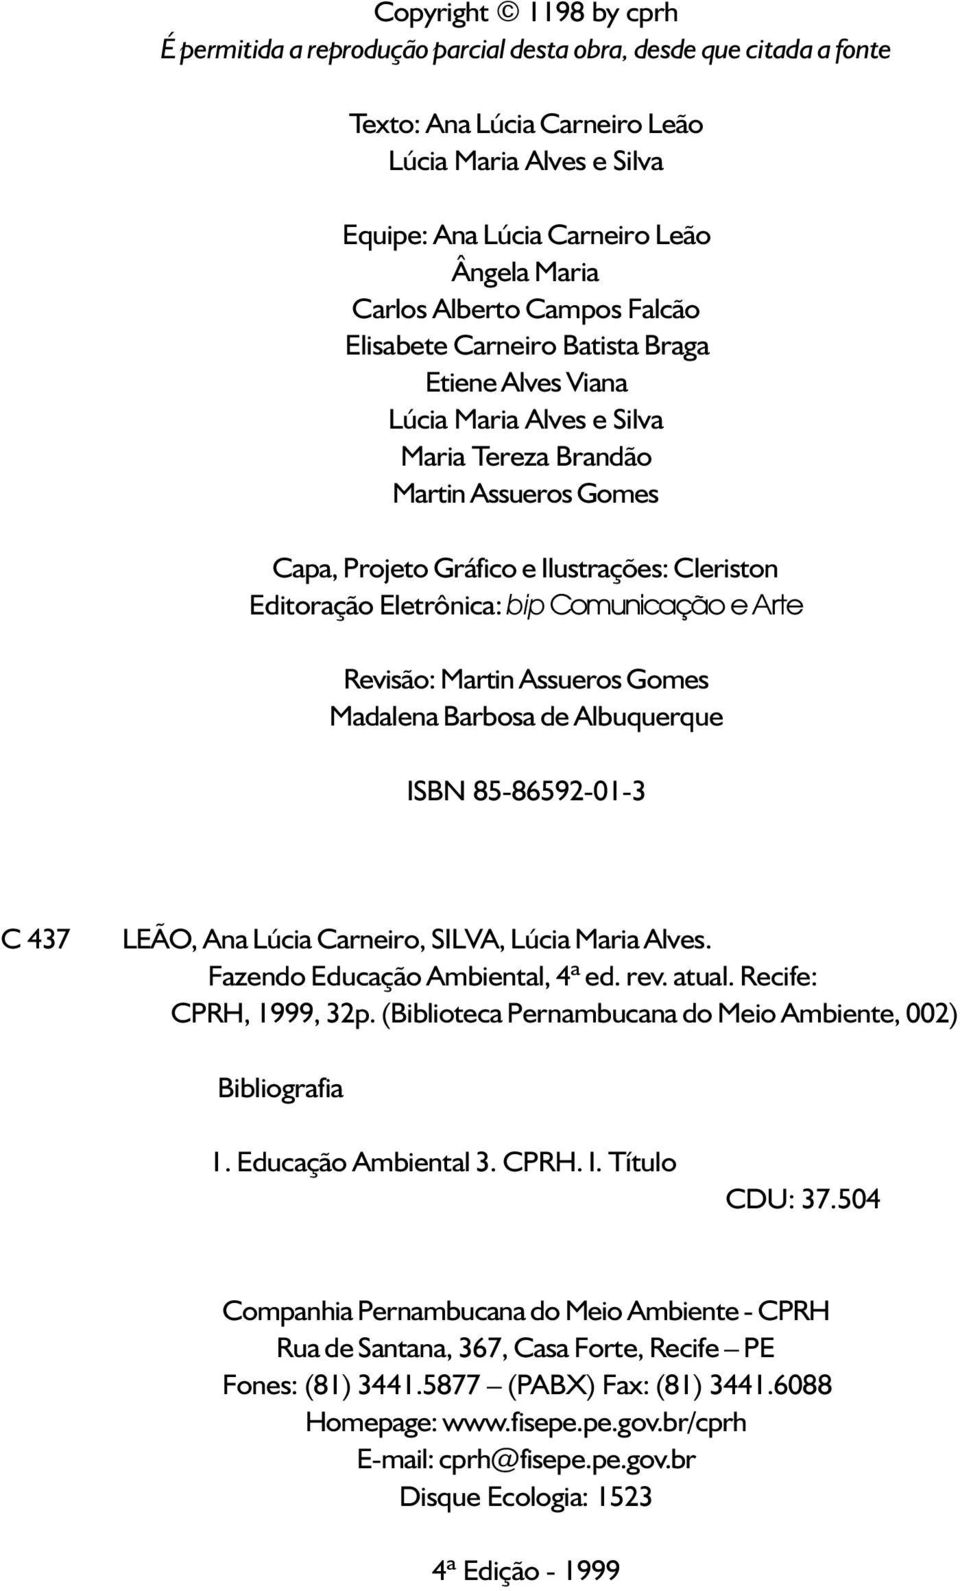 Editoração Eletrônica: bip Comunicação e Arte Revisão: Martin Assueros Gomes Madalena Barbosa de Albuquerque ISBN 85-86592-01-3 C 437 LEÃO, Ana Lúcia Carneiro, SILVA, Lúcia Maria Alves.